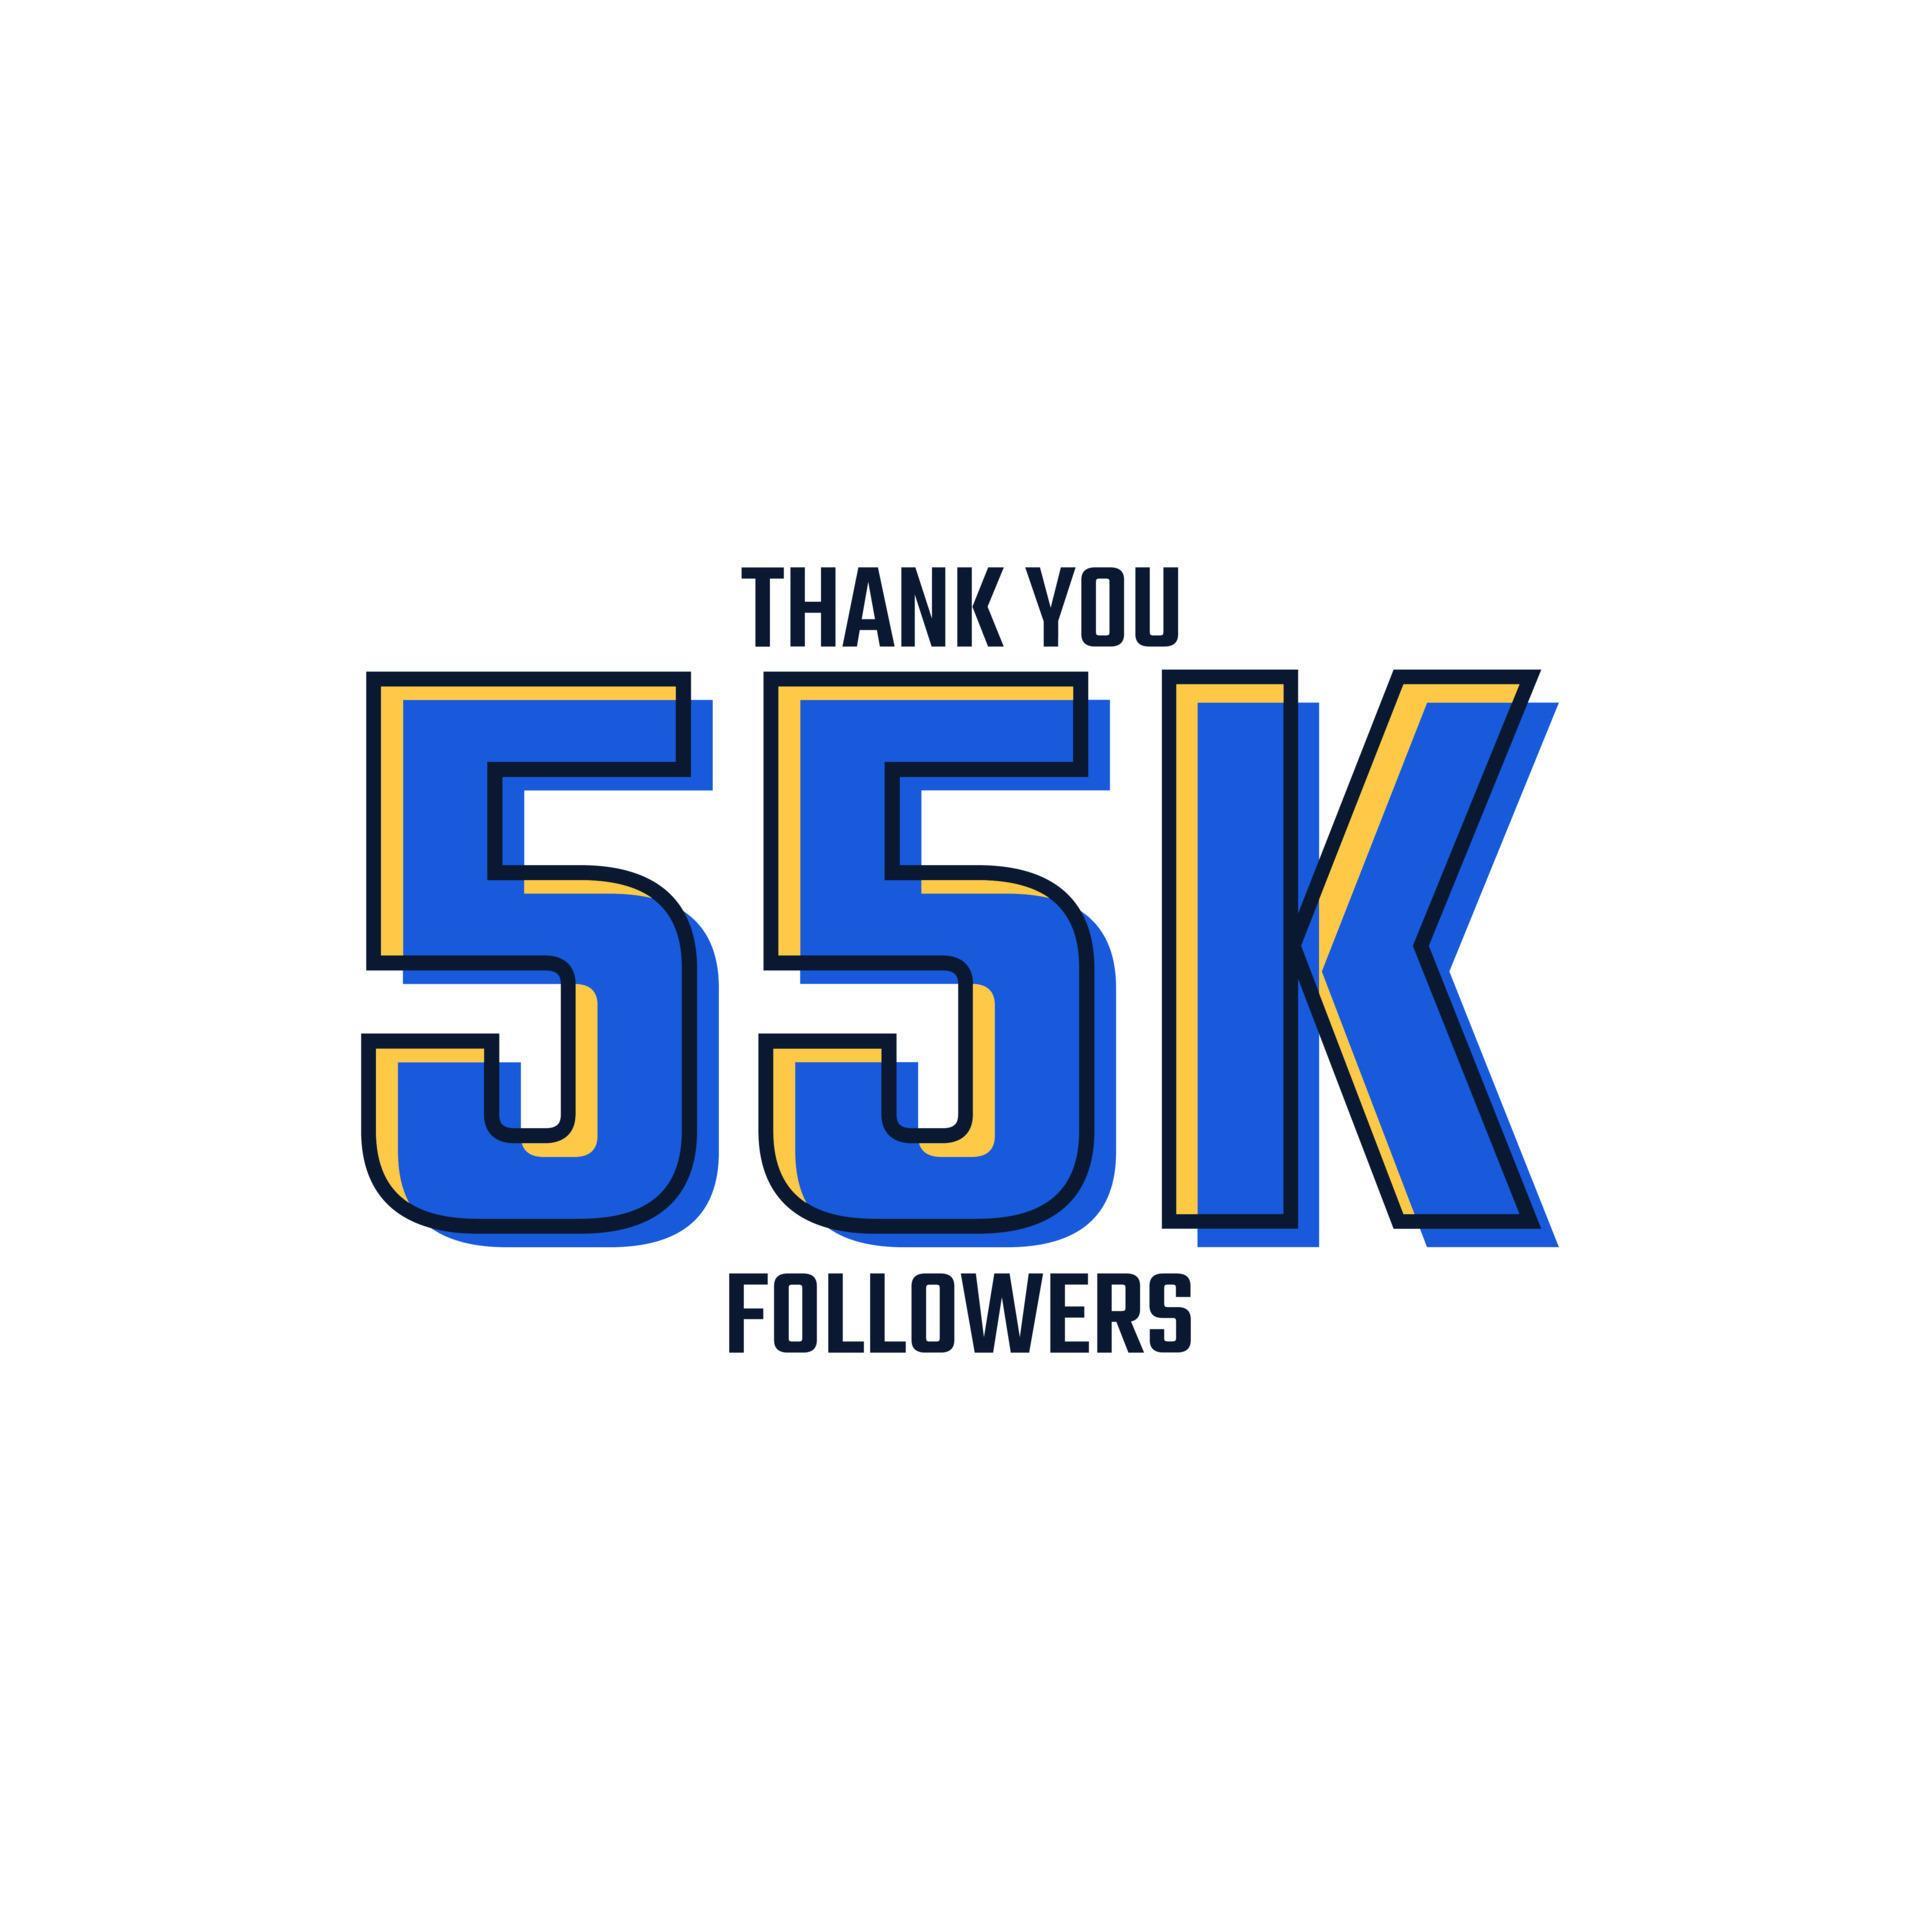 gracias vector de celebración de tarjeta de 55 k seguidores. 55000 seguidores felicitaciones post plantilla de redes sociales.